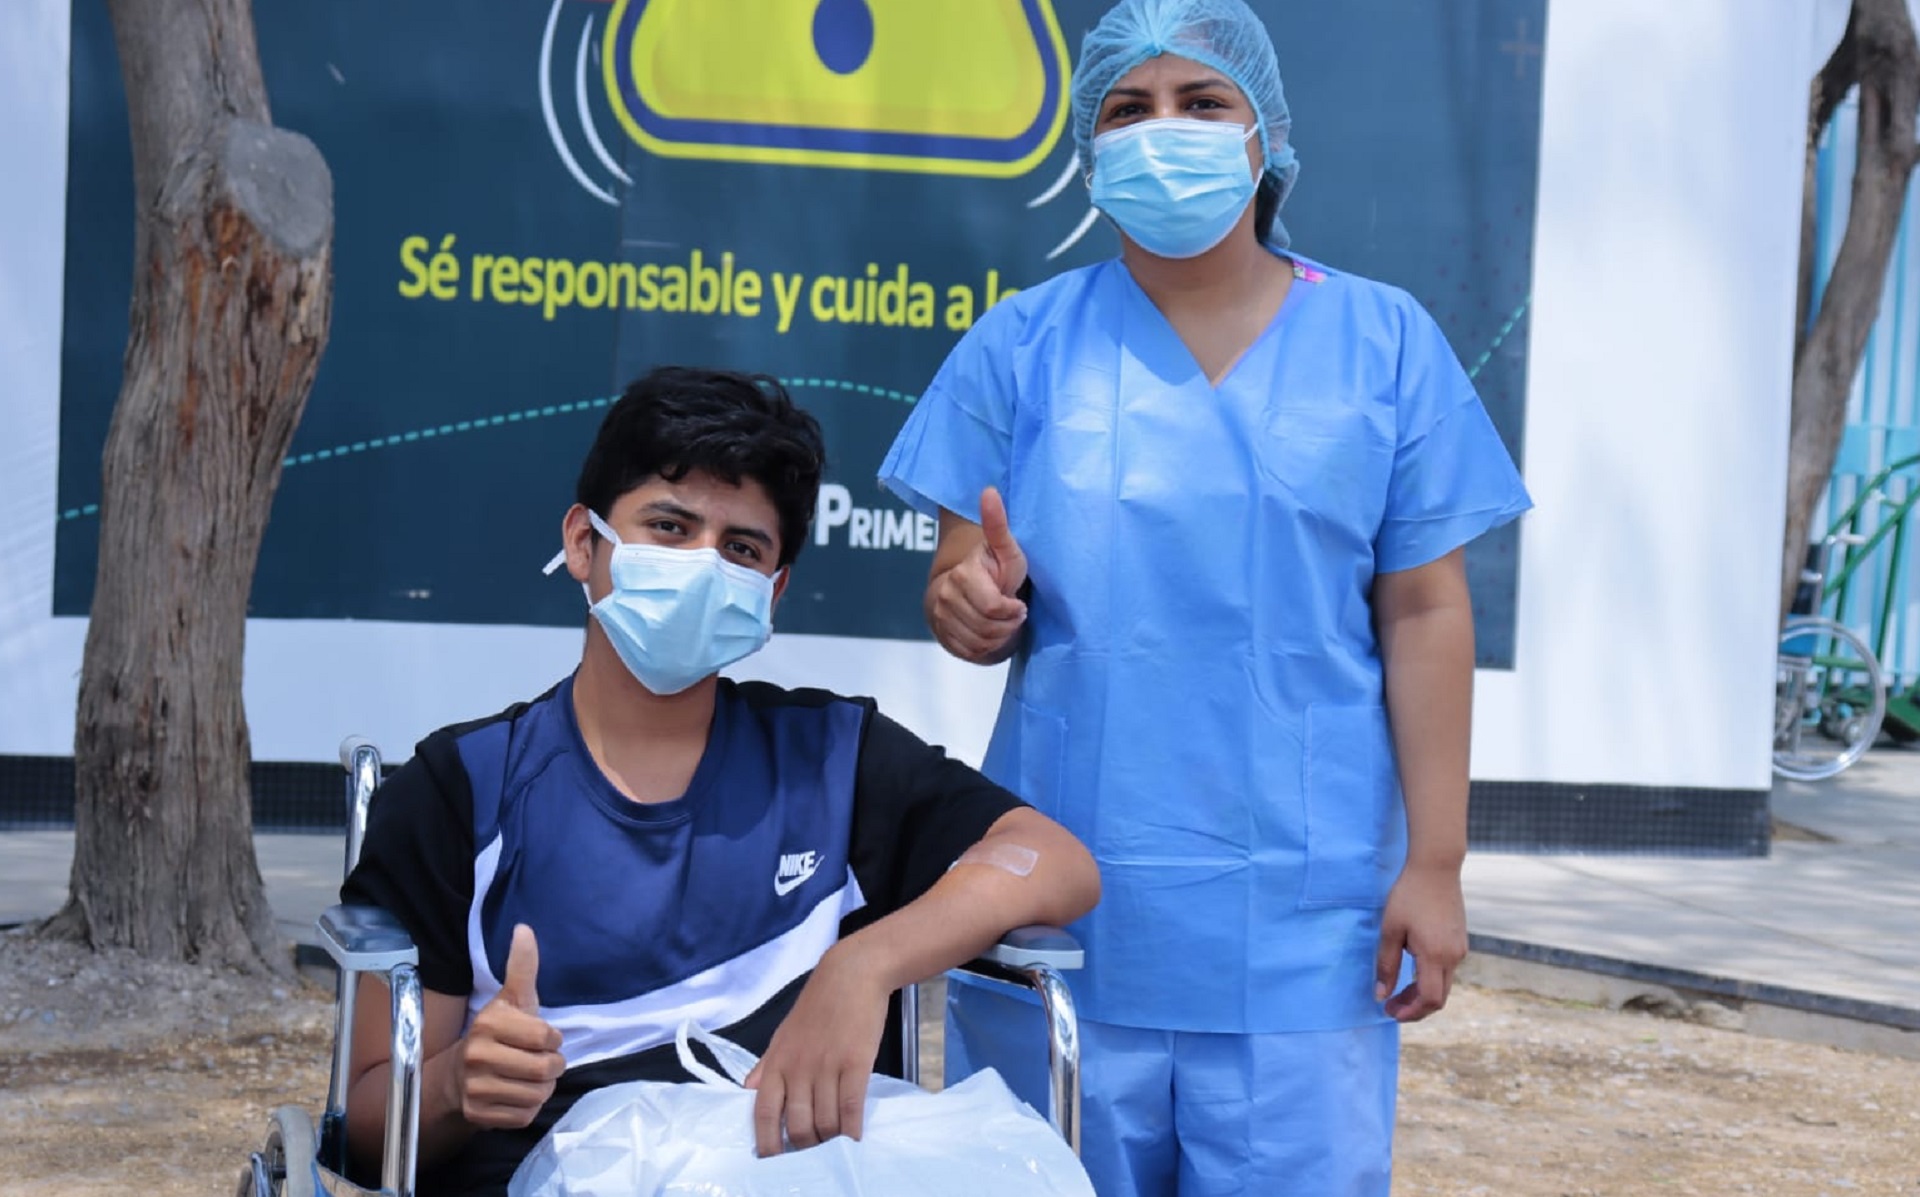 Adolescente vence al COVID-19 en su cumpleaños gracias a médicos de la Villa EsSalud Piura